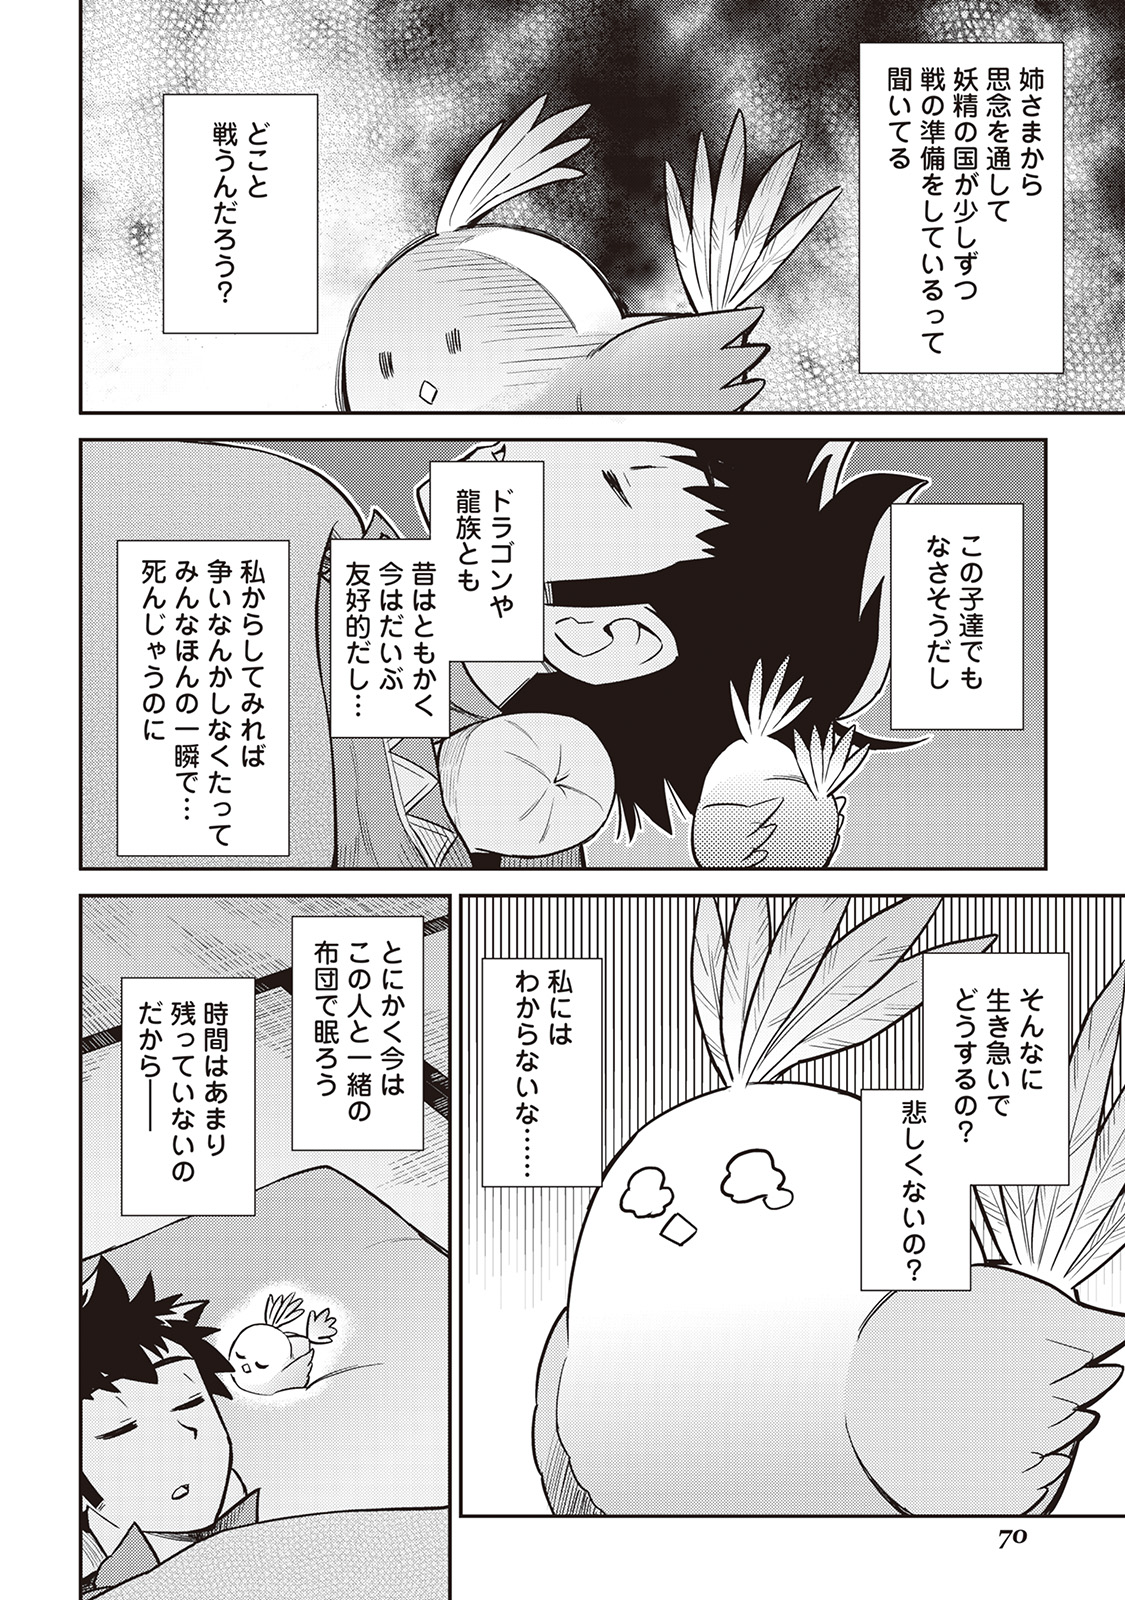 Toaru Ossan no VRMMO Katsudouki - Chapter 48 - Page 24